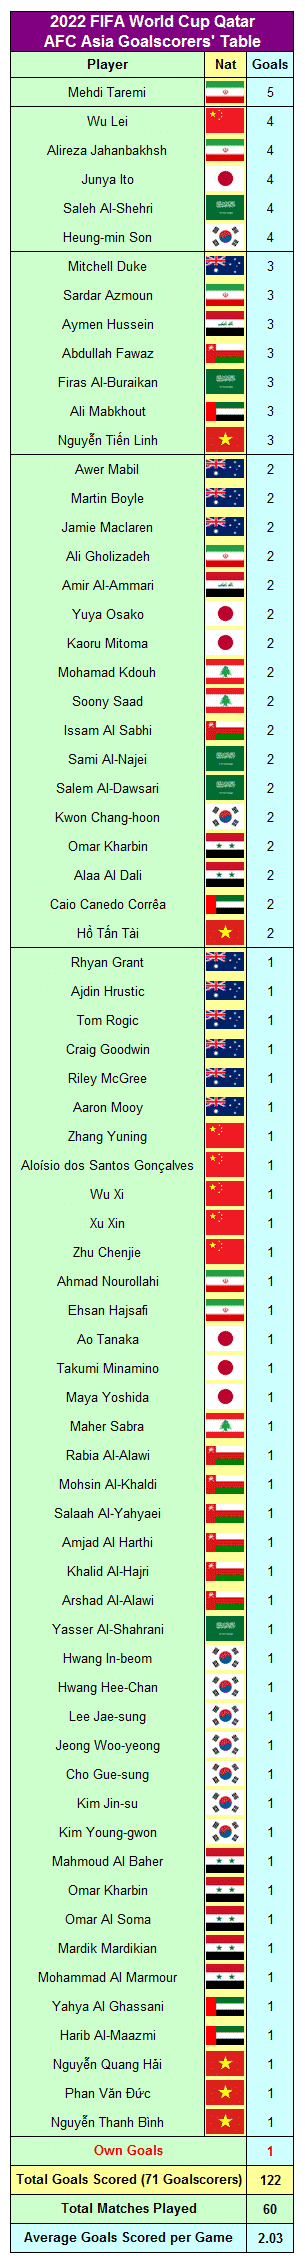 Tabela de artilheiros da Copa do Mundo da FIFA 2022 Qatr AFC Ásia